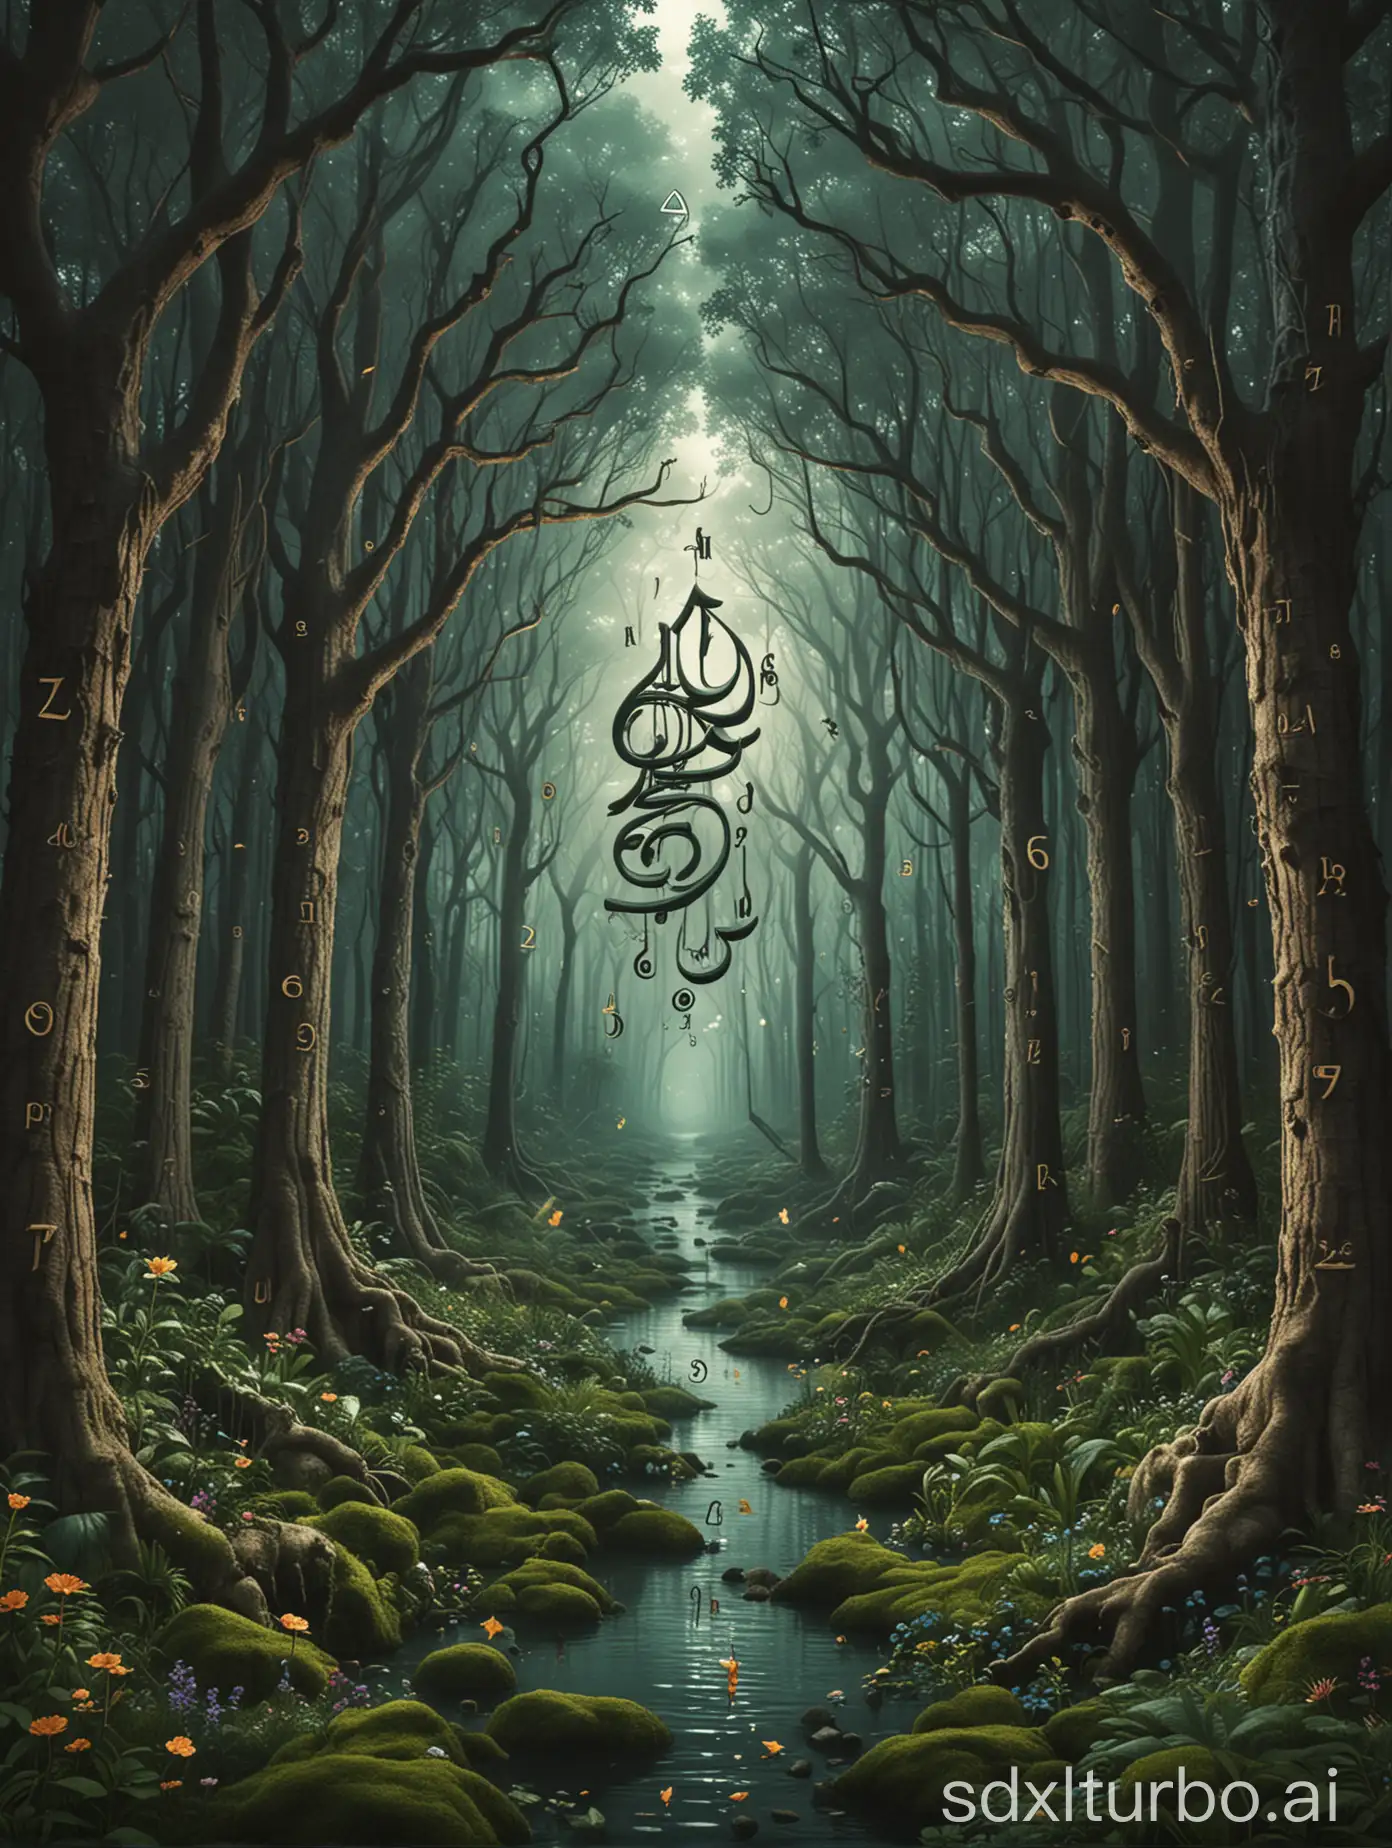 制作音乐的专辑封面设计，主题是关于奇幻森林和阿拉伯数字